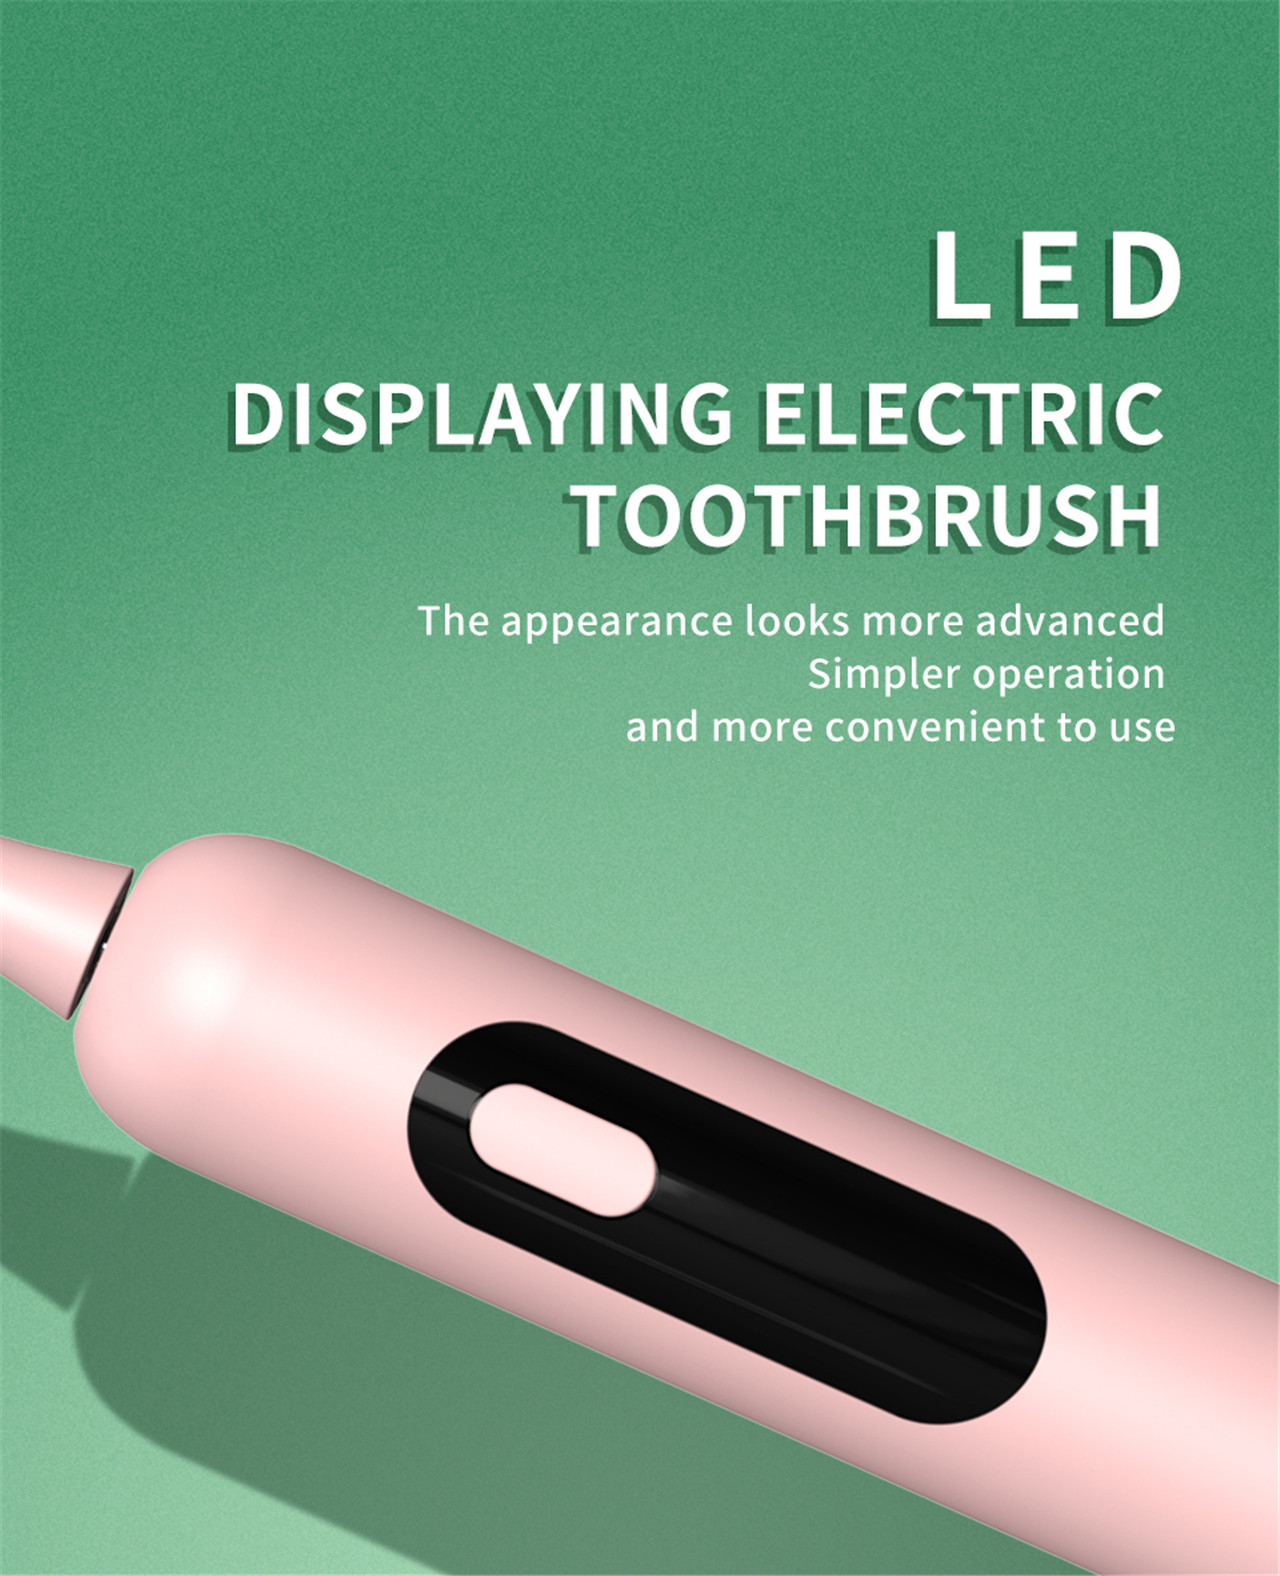 Miglior spazzolino elettrico Sonic per adulti ricaricabile impermeabile ipx7 (4)